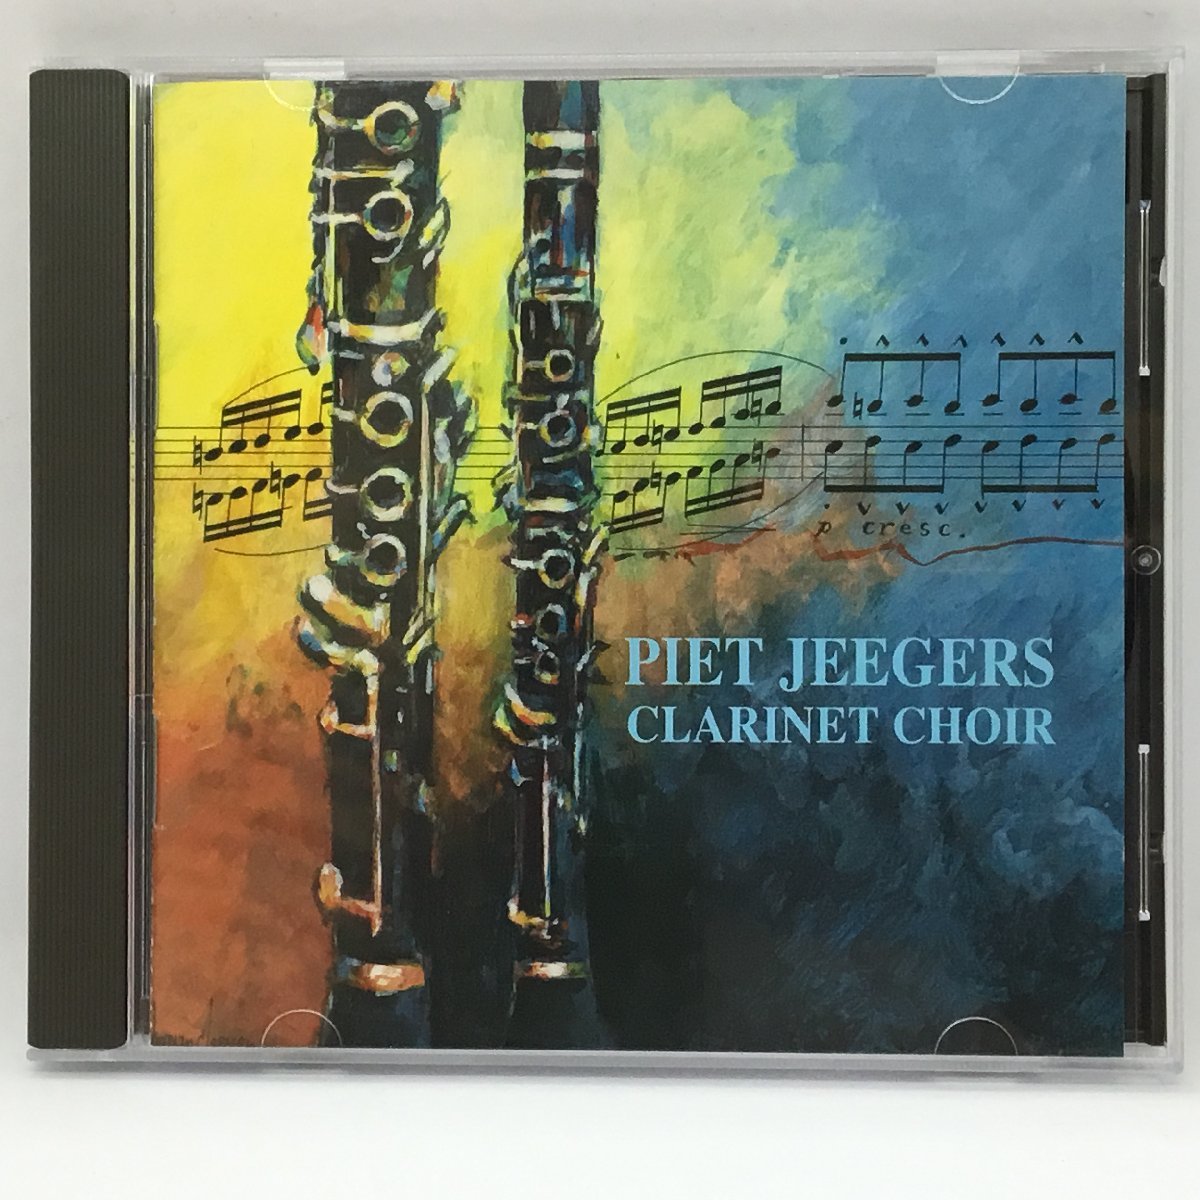 2枚セット ◇ ピート・イェーガー、クラリネット クワイヤー / VOL.1&2 ▲2CD　Piet Jeegers Clarinet Choir - Vol.1&2_画像4